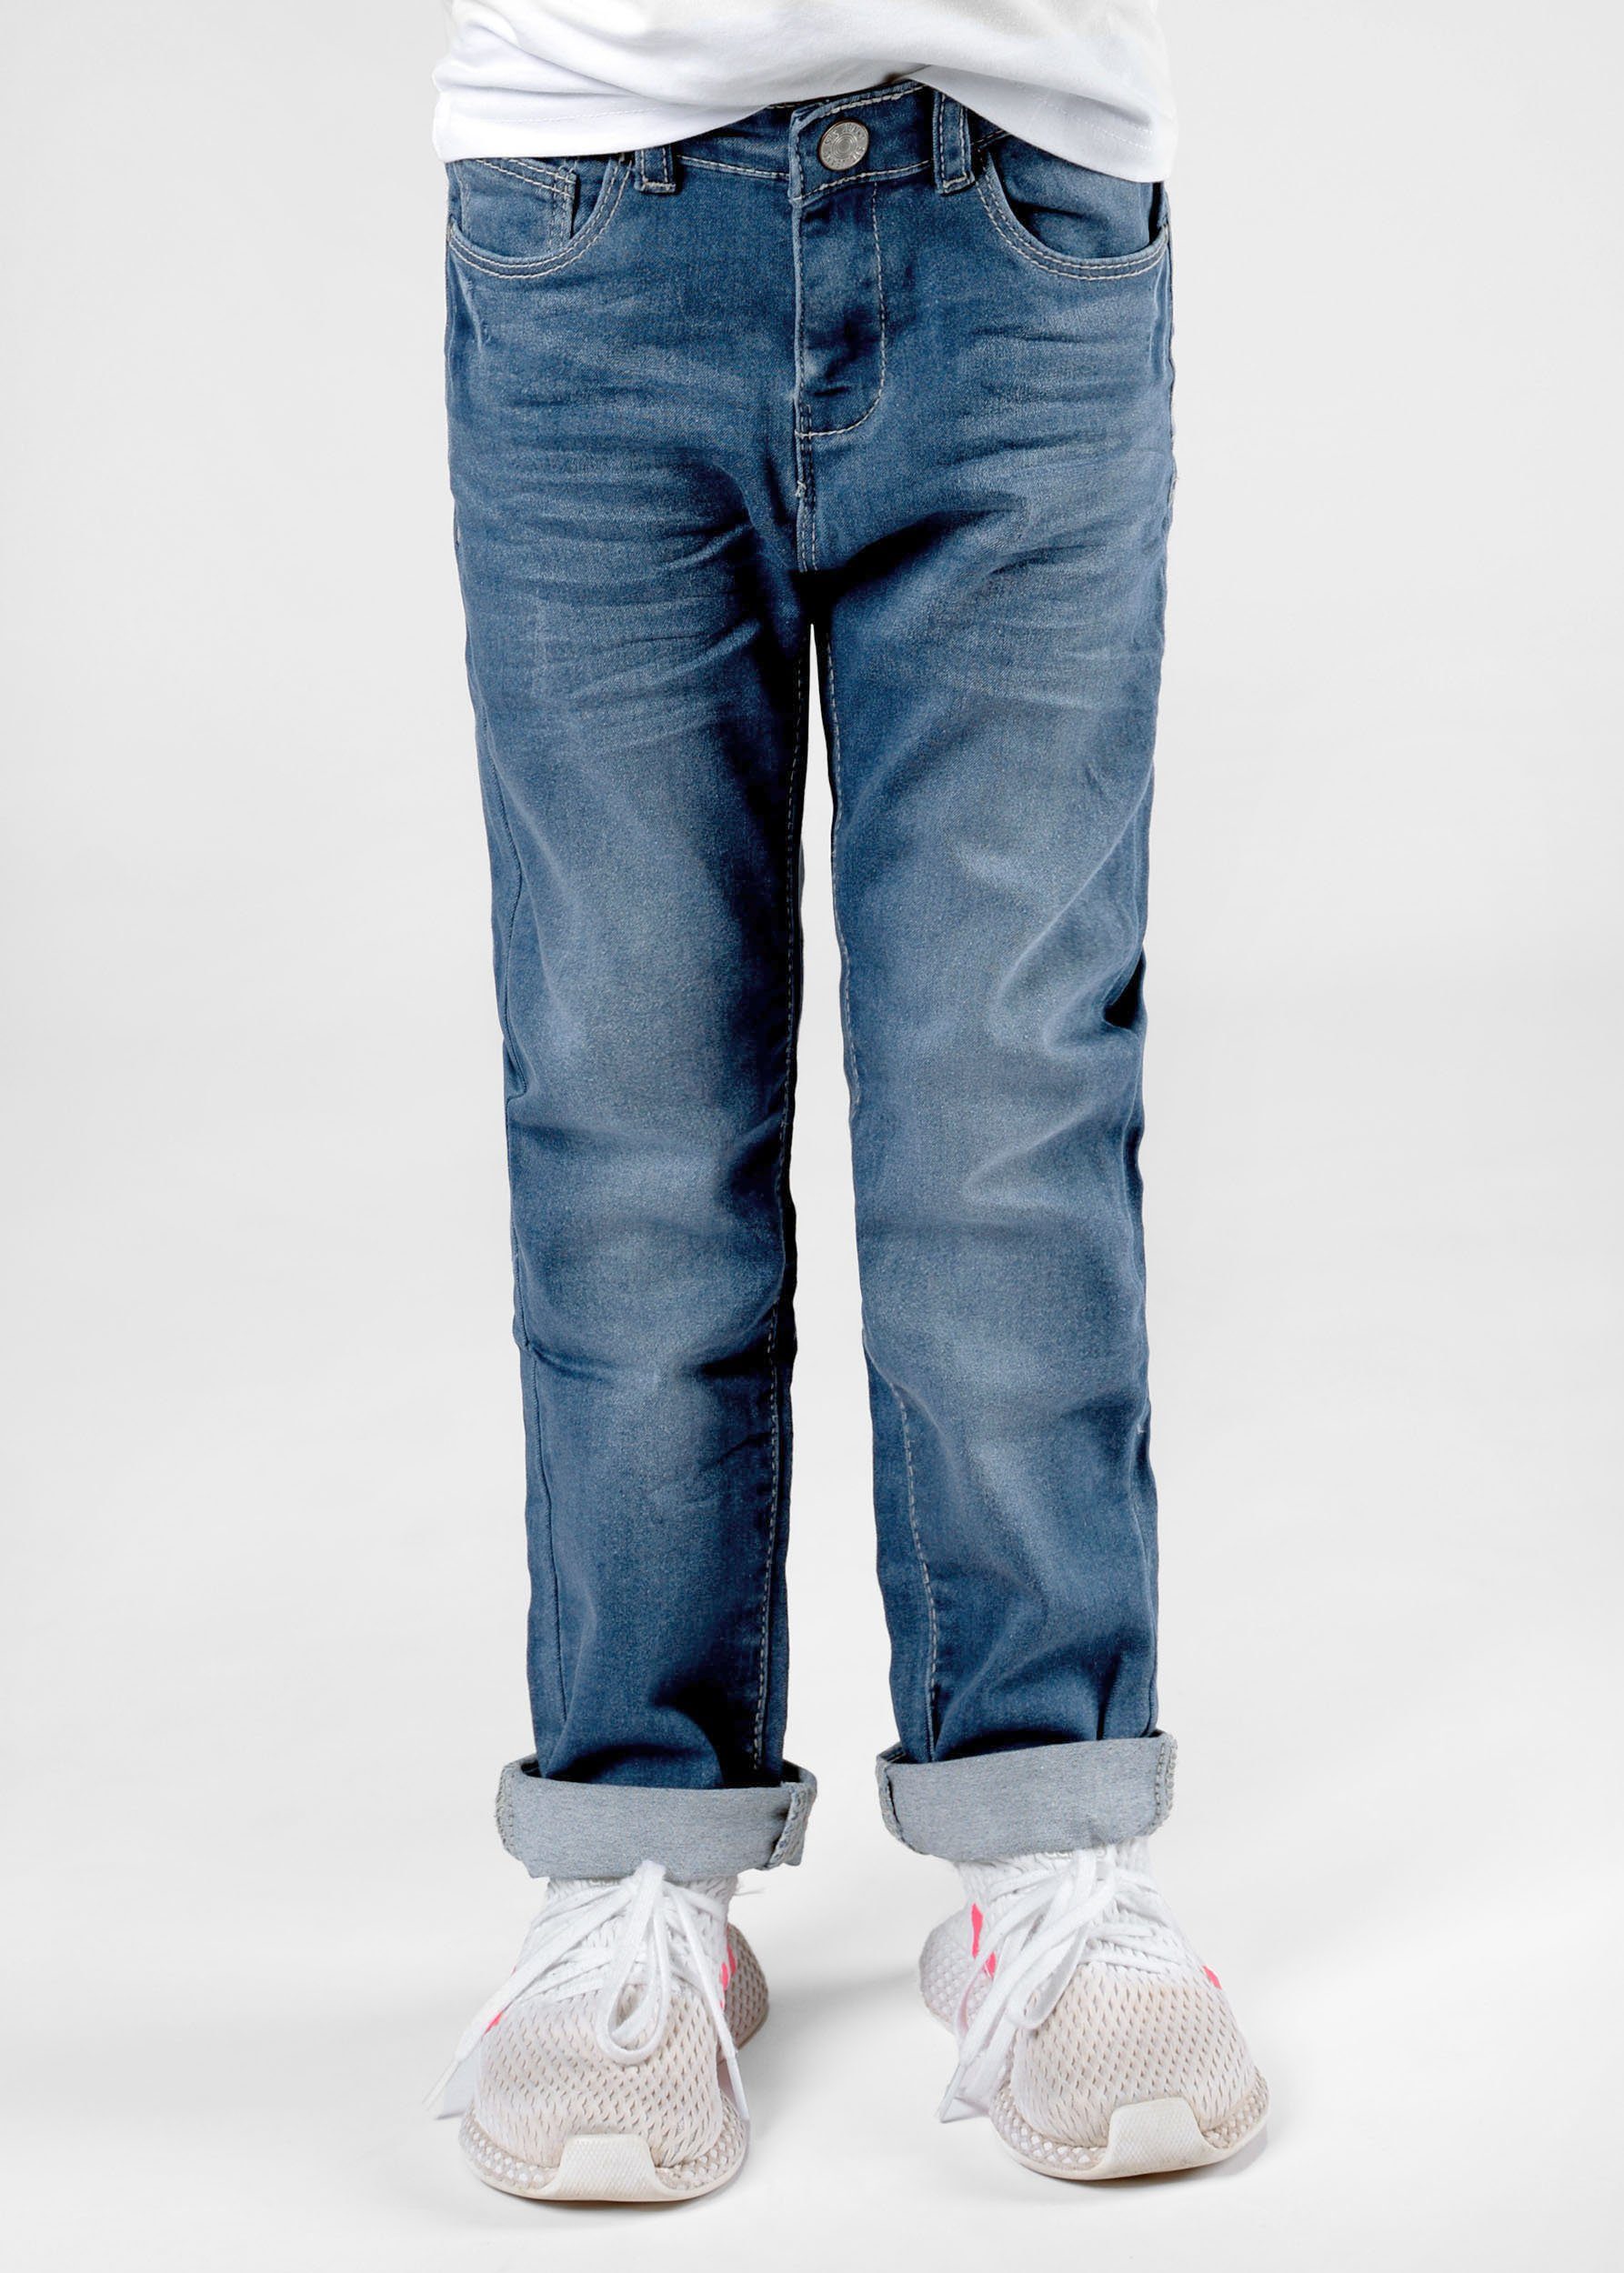 Hosenbein Skinny Jeans weitenverstellbarer zulaufendes - Denim Kleinkinder Innenbund, STACCATO Mädchen Mid schmal Regular-fit-Jeans Blue